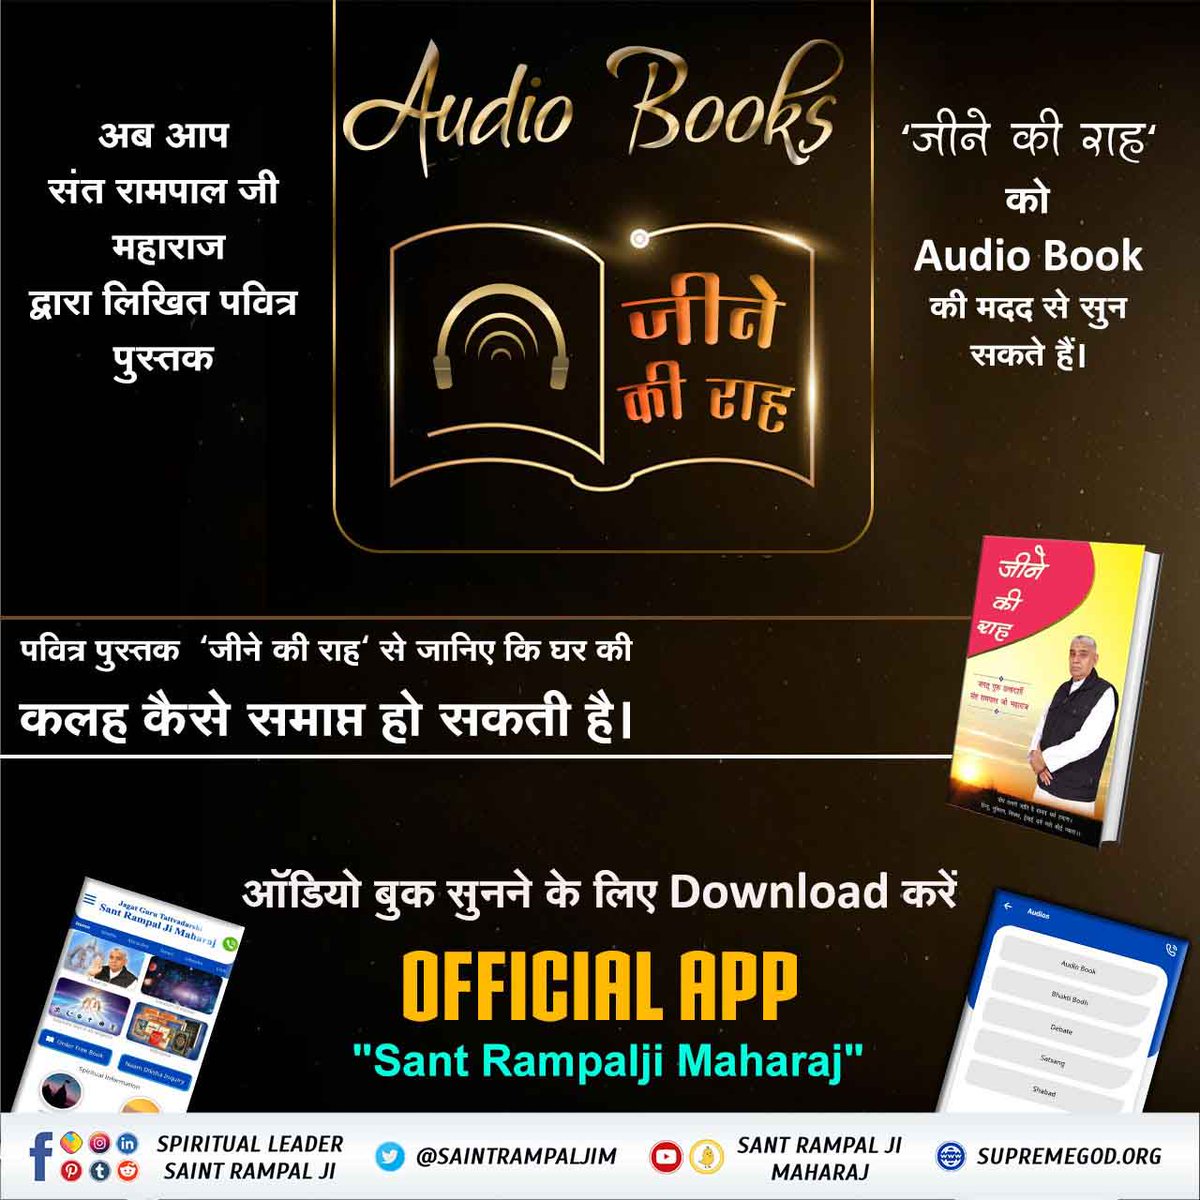 पवित्र पुस्तक 'जीने की राह'से जानिए कि कैसे देवता भक्त परिवार की सुरक्षा करते हैं। Audio book सुनने के लिए 'Sant Rampal ji Maharaj' पर जाएं।
 #bookreview #bookquotes
#GyanGanga